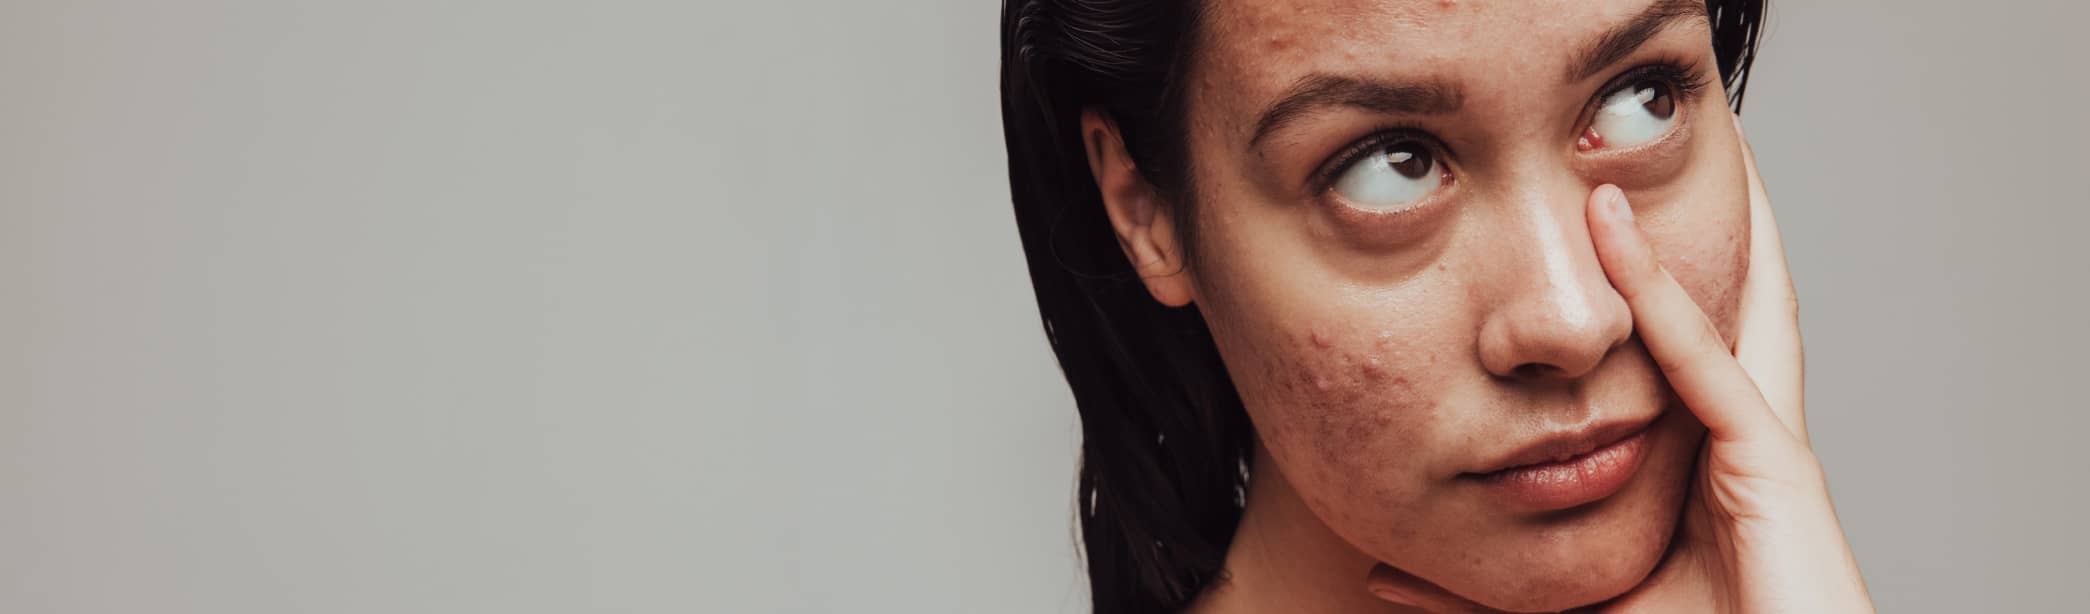 Quel est le traitement le plus efficace contre l'acné ? | Maison Albanéa | Aubagne